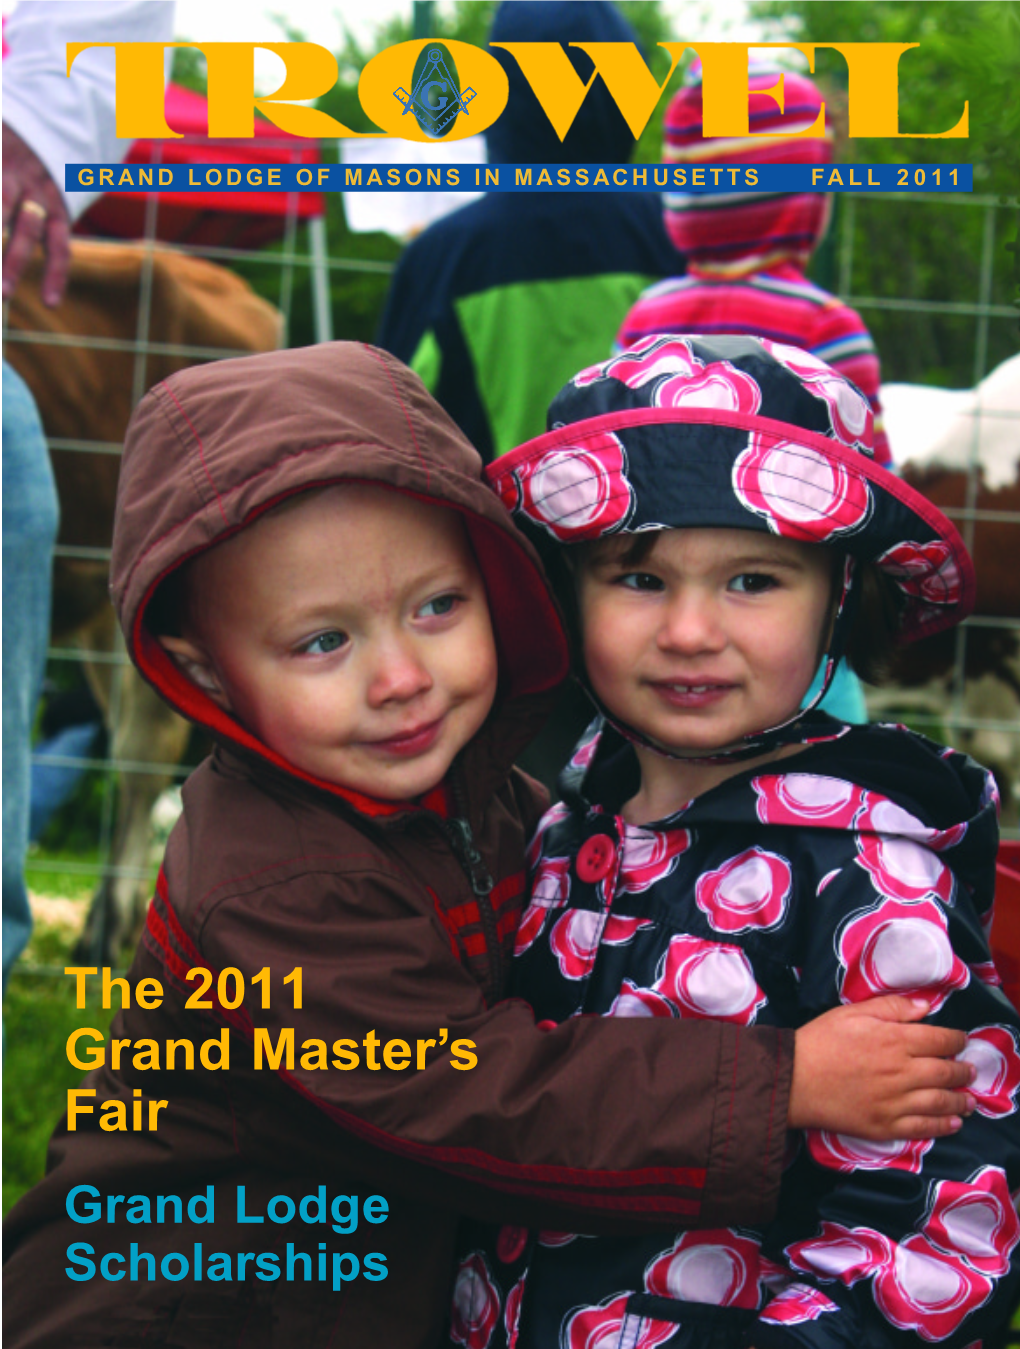 The 2011 Grand Master's Fair